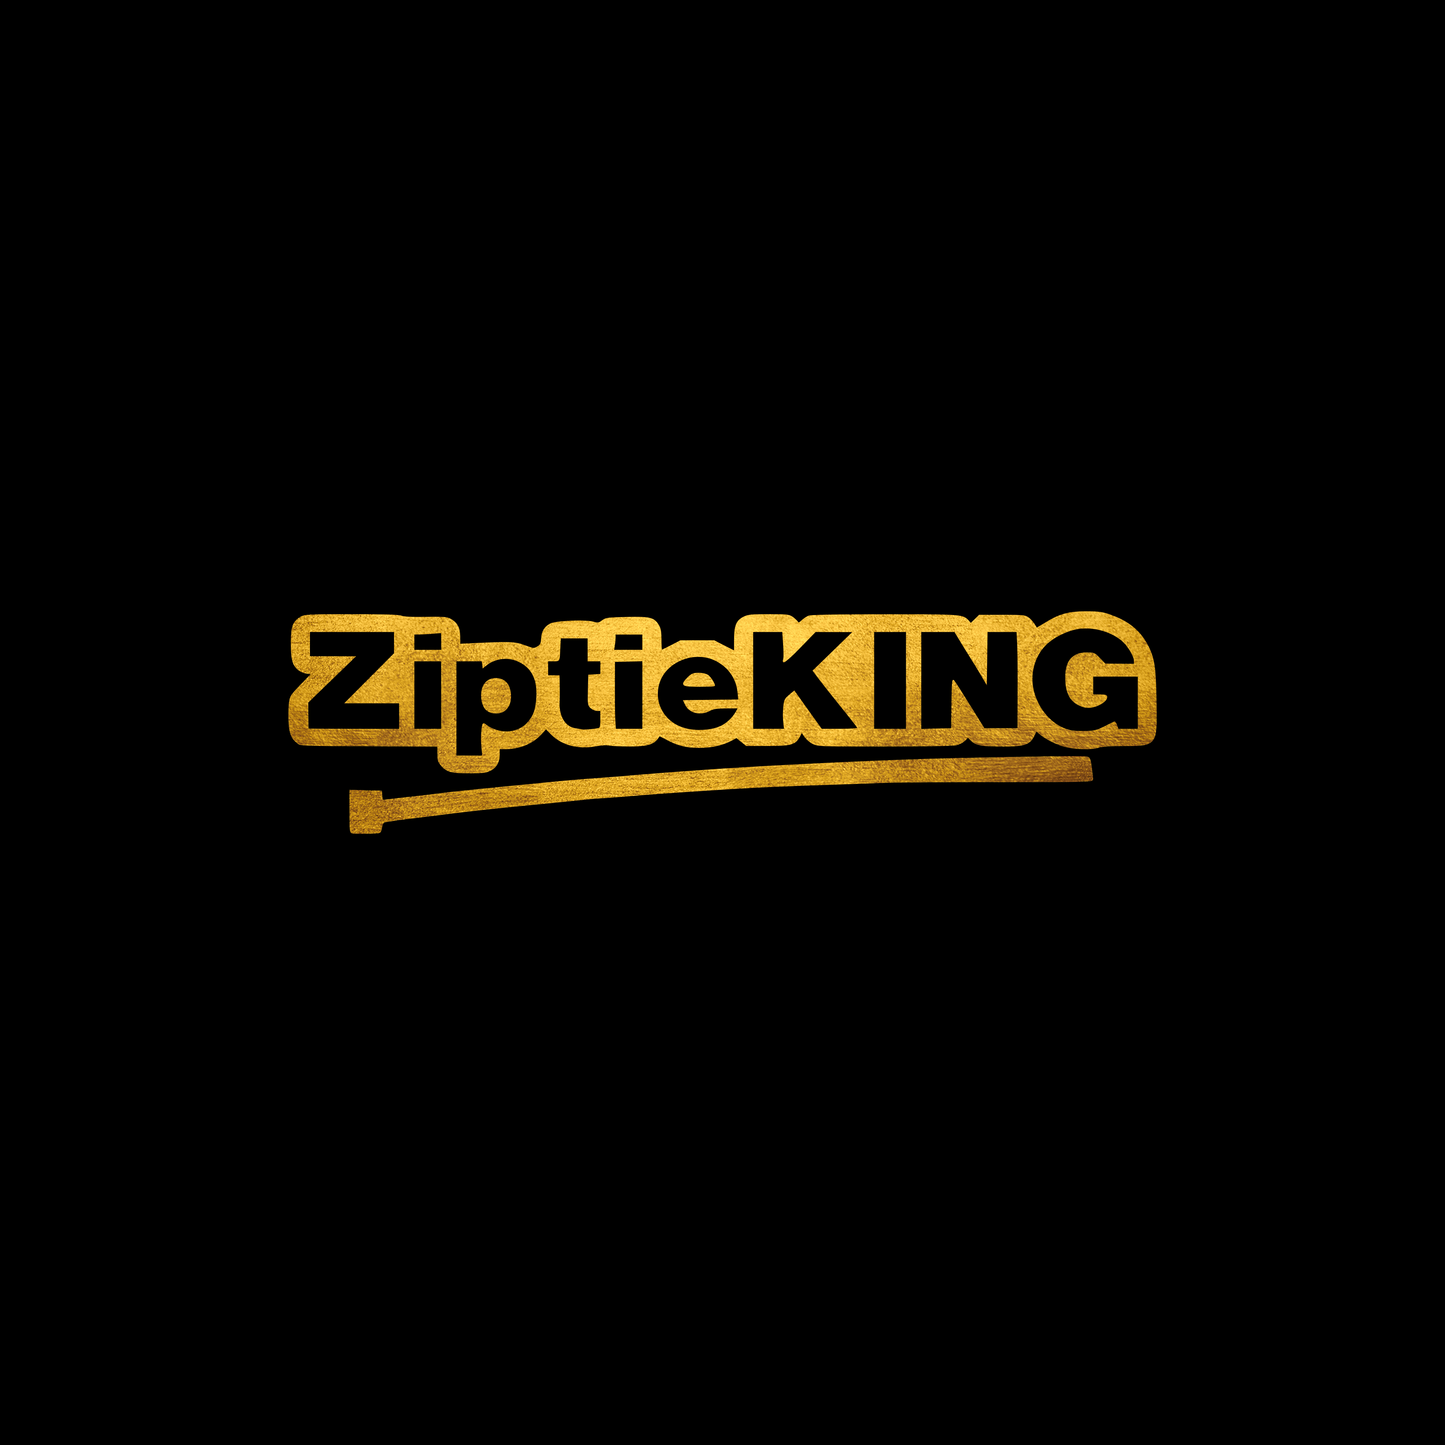 Ziptie king sticker decal